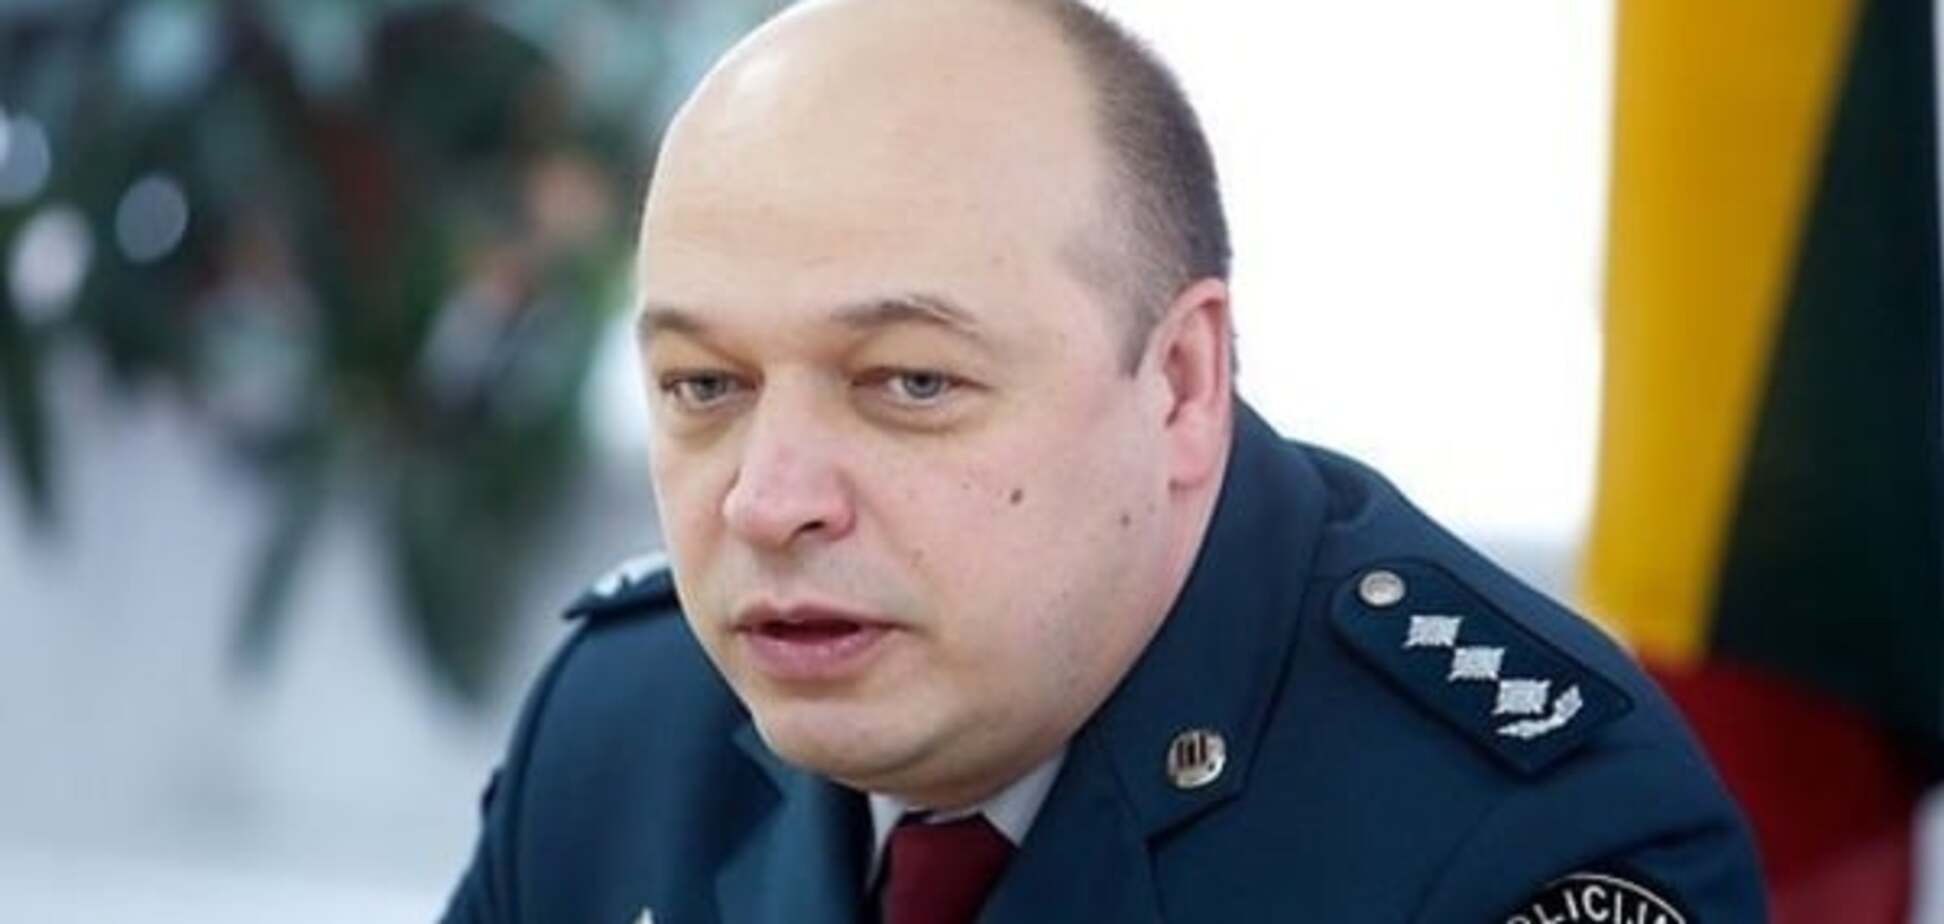 Глава полиции Вильнюса решил уволиться ради реформ в Украине